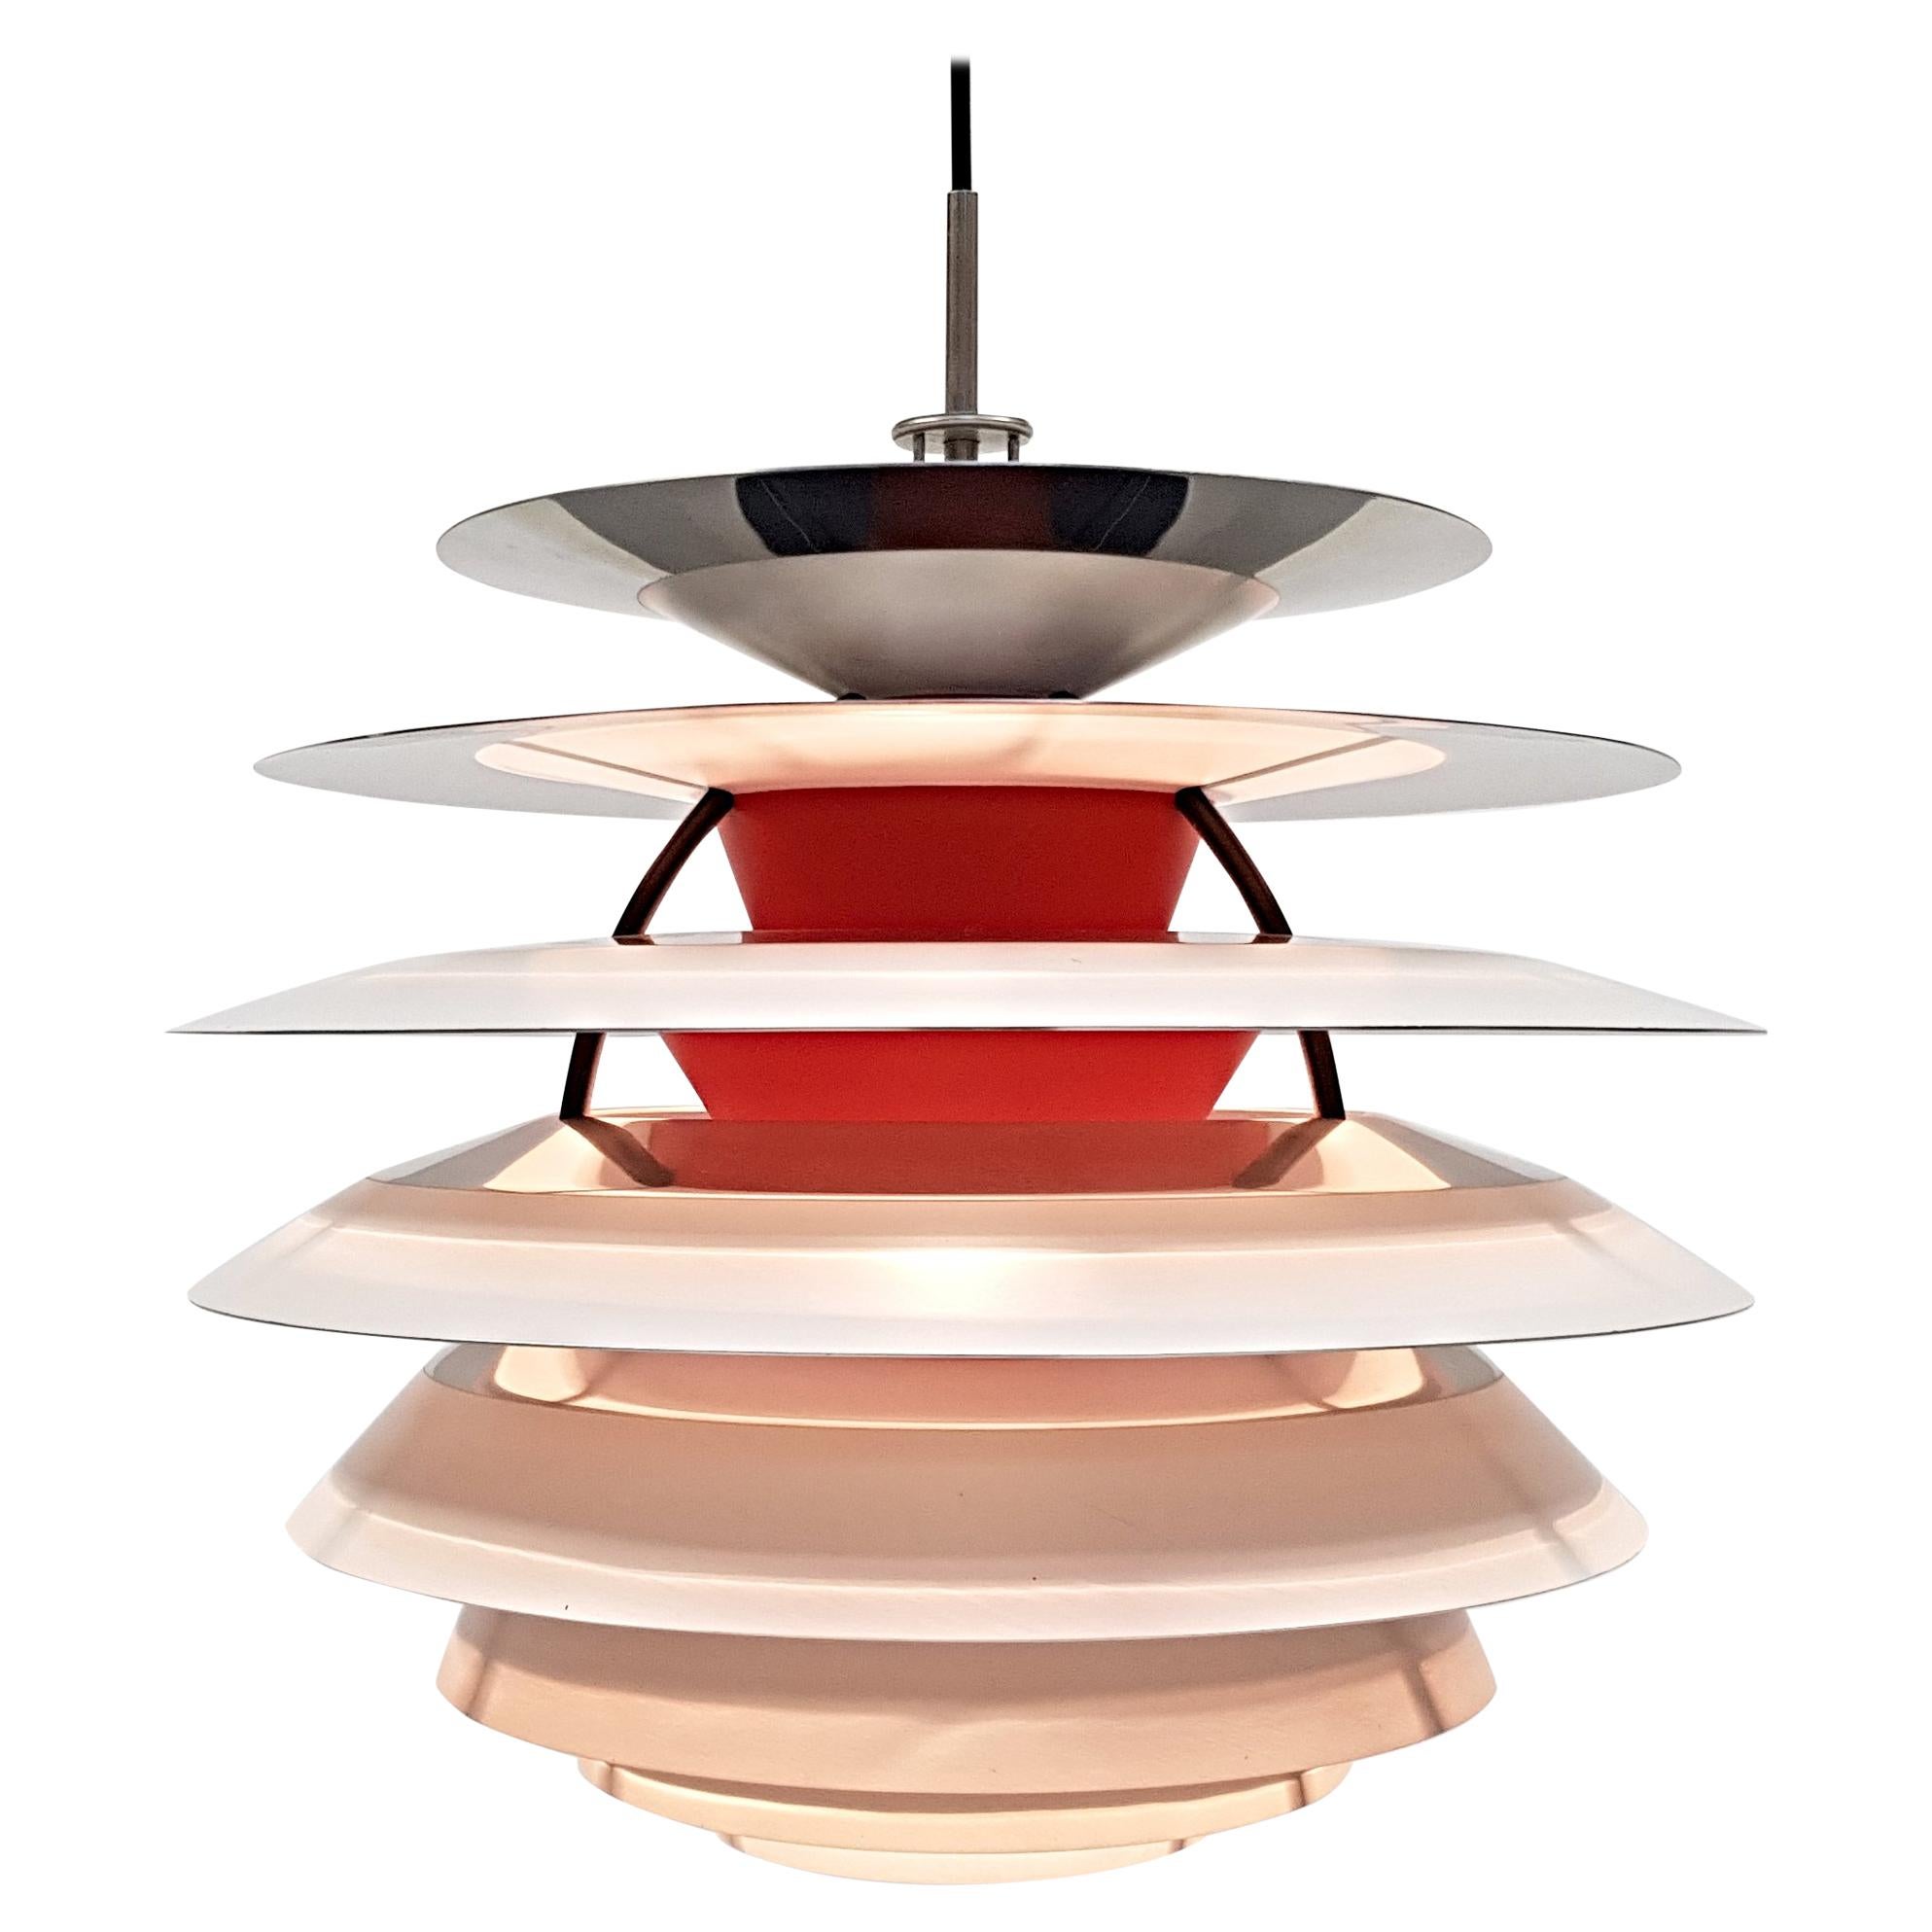 "Ph Kontrast" Ceiling Lamp by Poul Henningsen for Louis Poulsen, Designed 1962